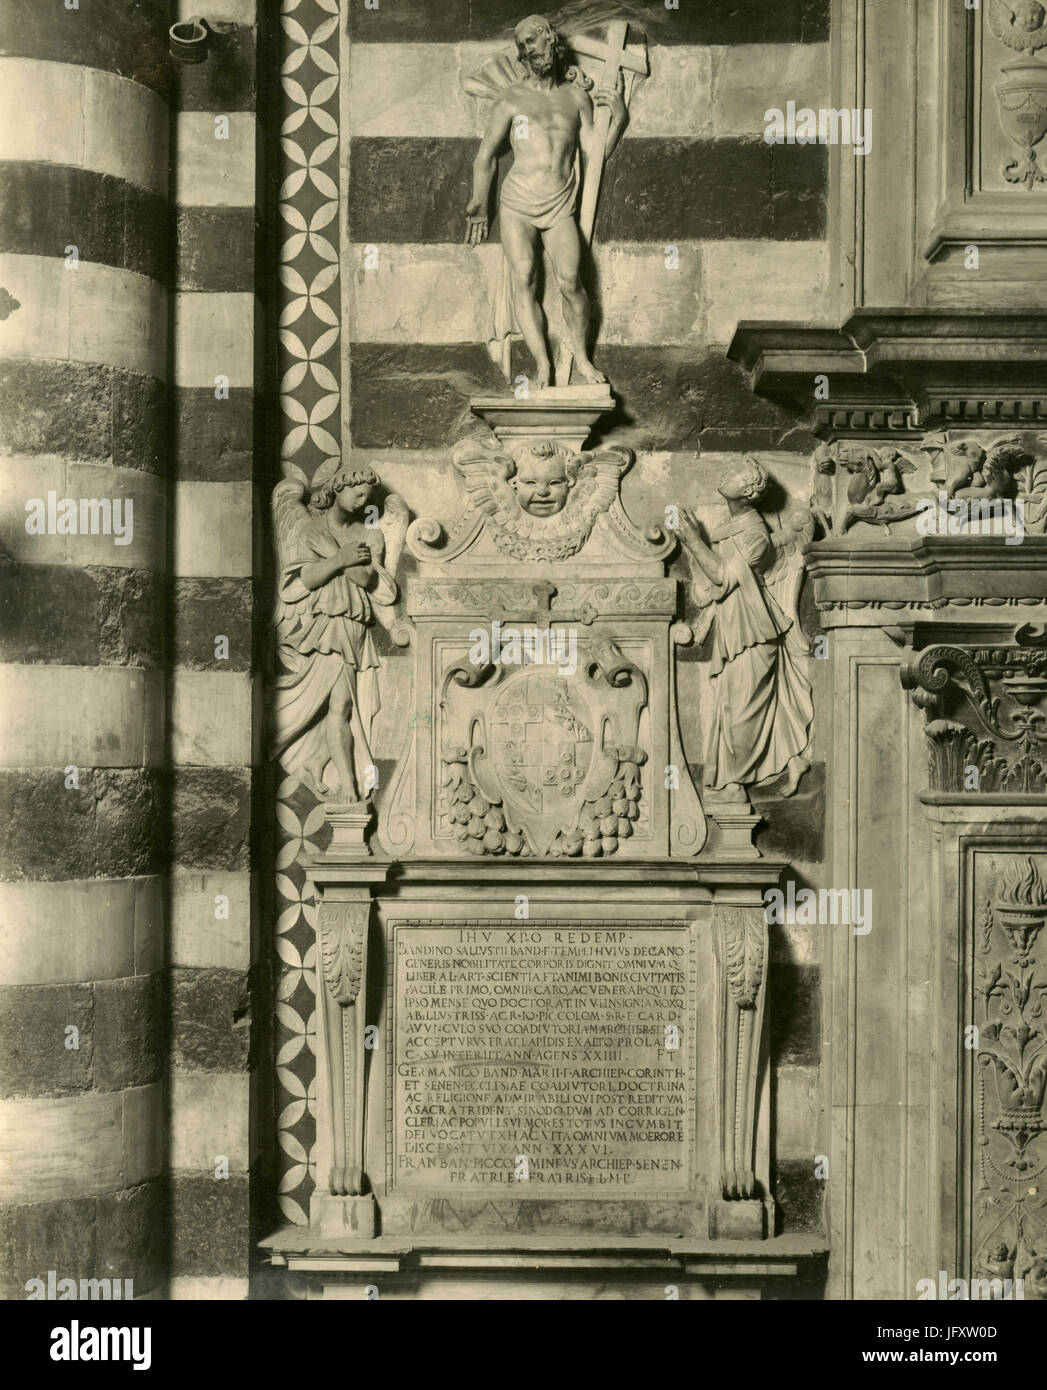 Memorial de Sallustio Bandini, mármol atribuida a Miguel Ángel, Siena, Italia Foto de stock